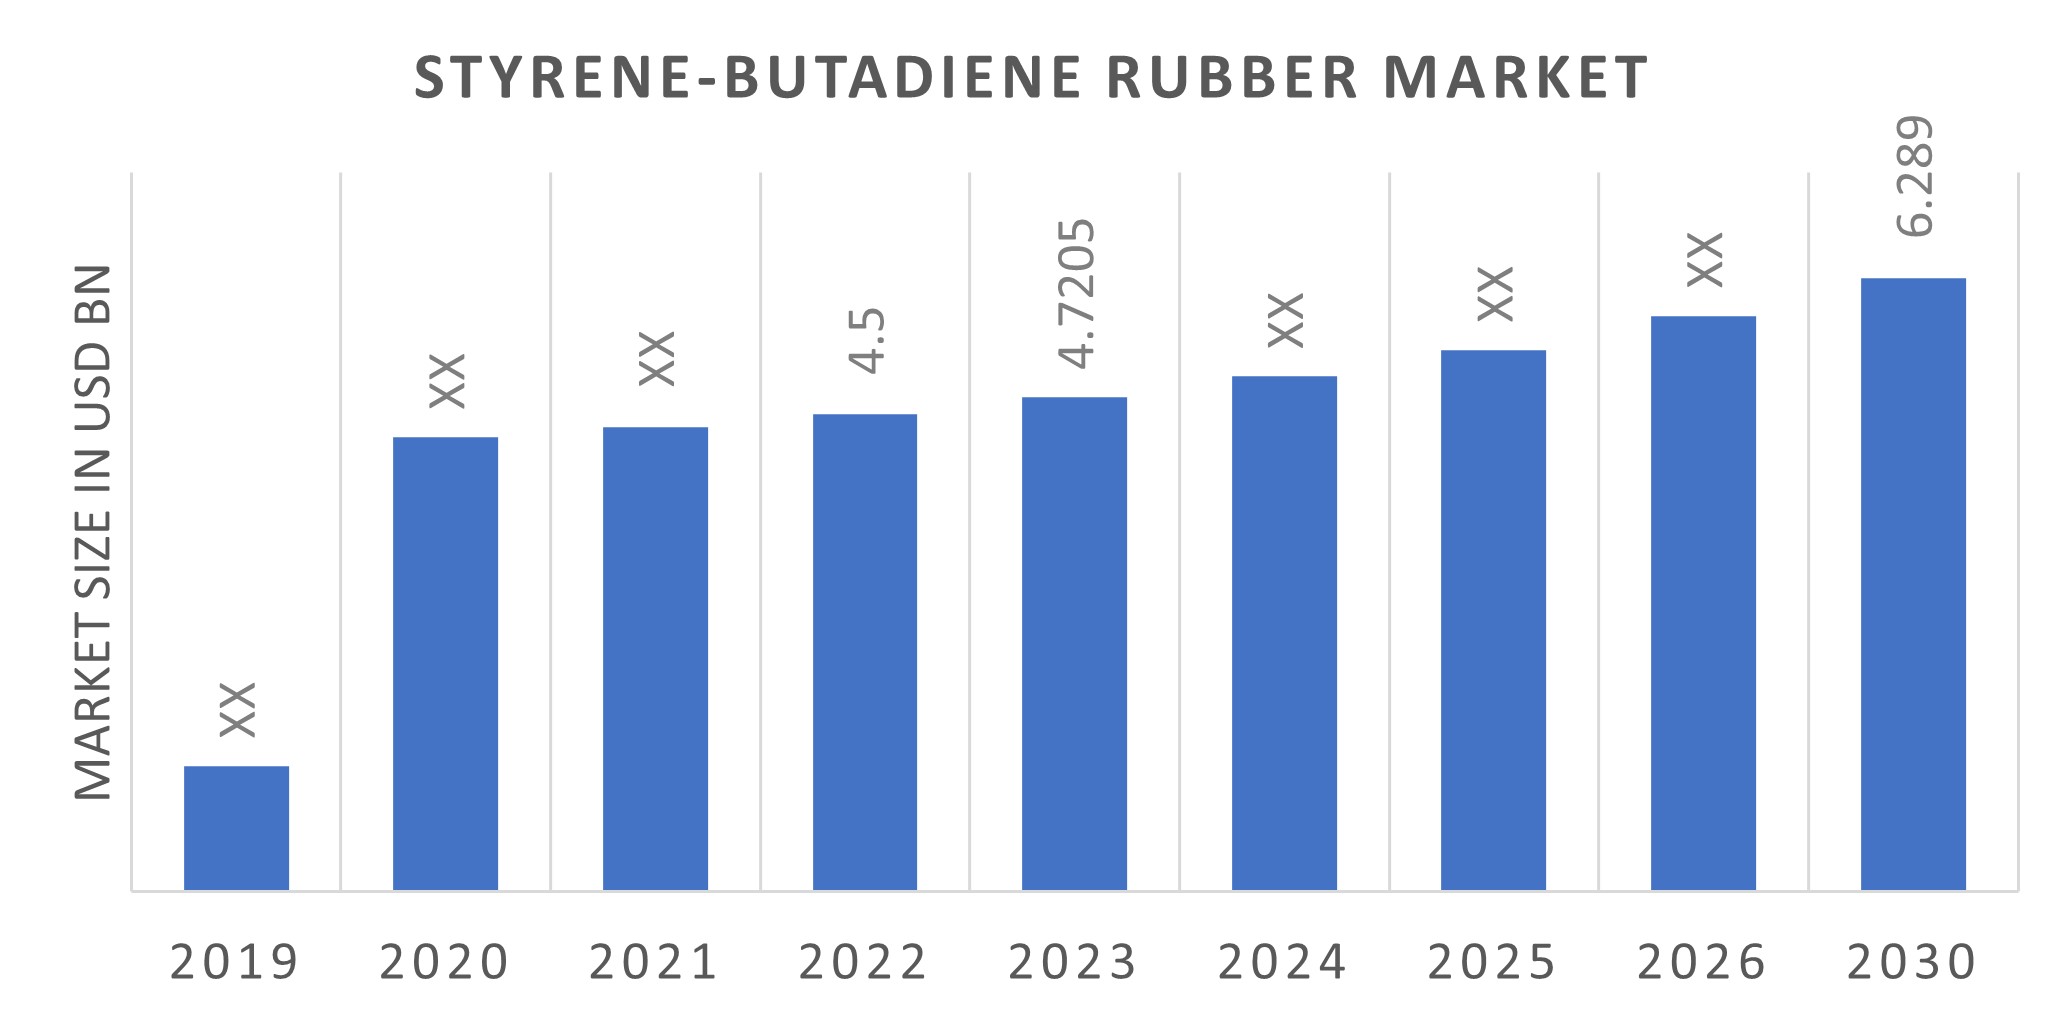 Global Styrene-Butadiene Rubber Market